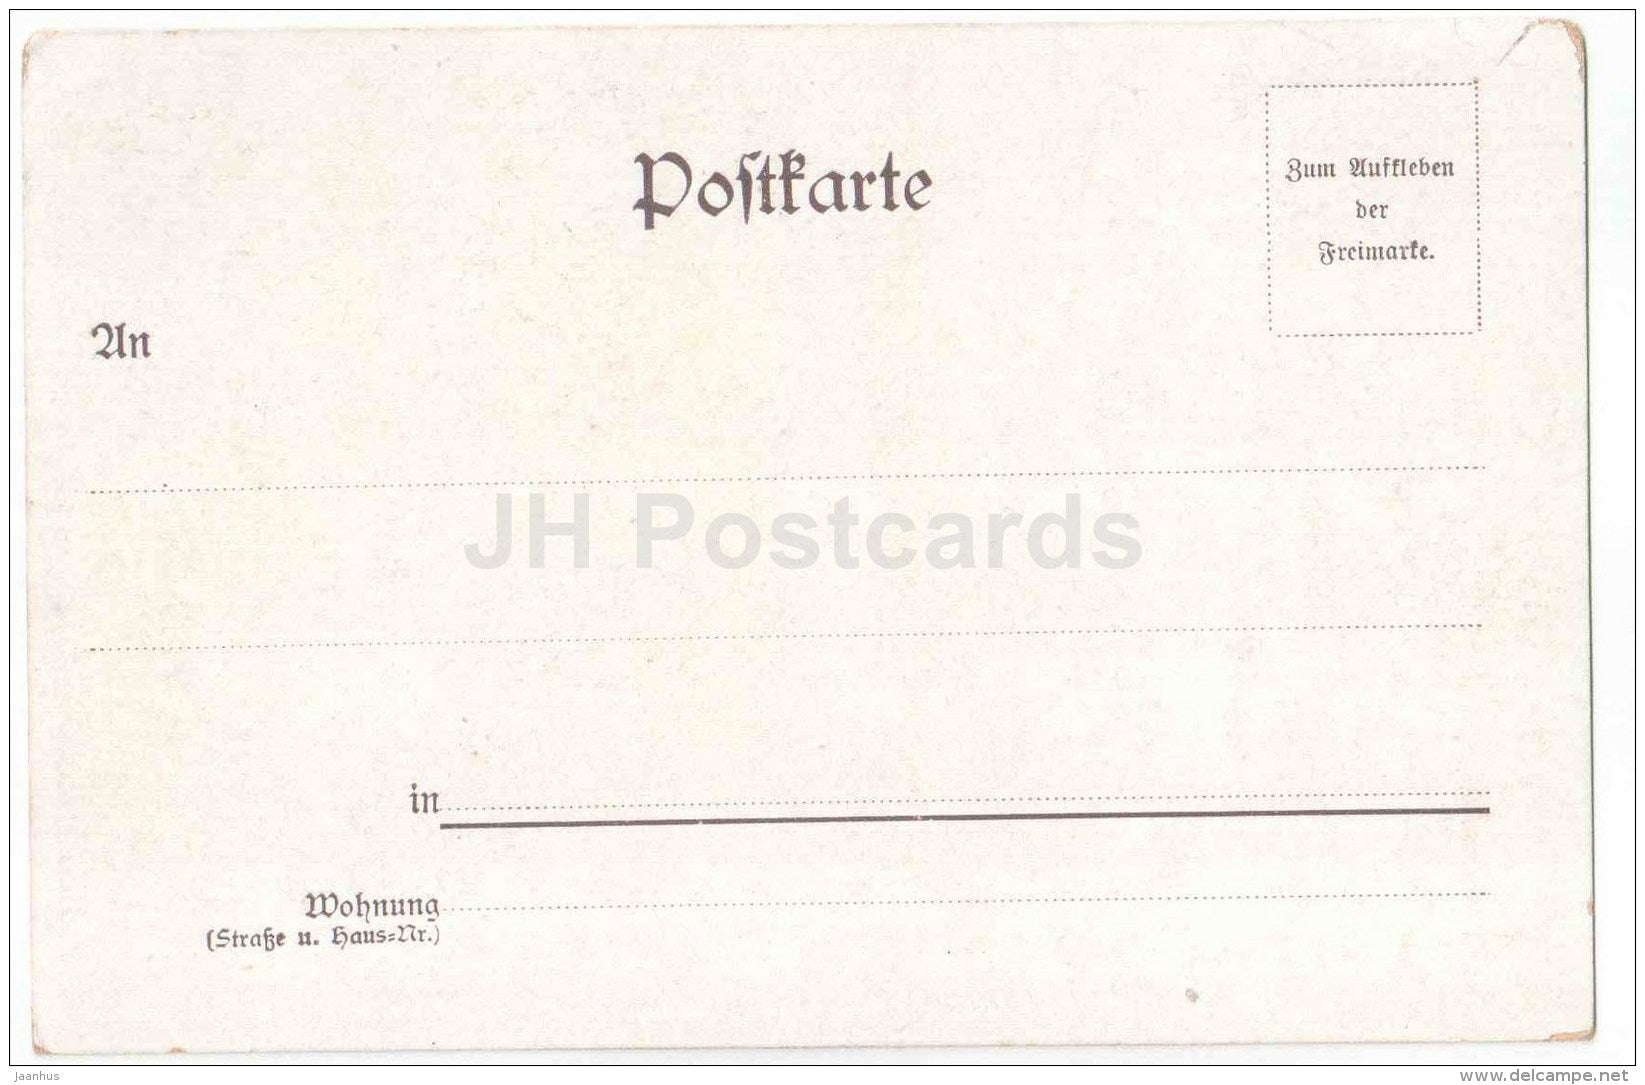 Gruss aus Berlin - Reichstag - Berlin - Germany - old postcard - unused - JH Postcards